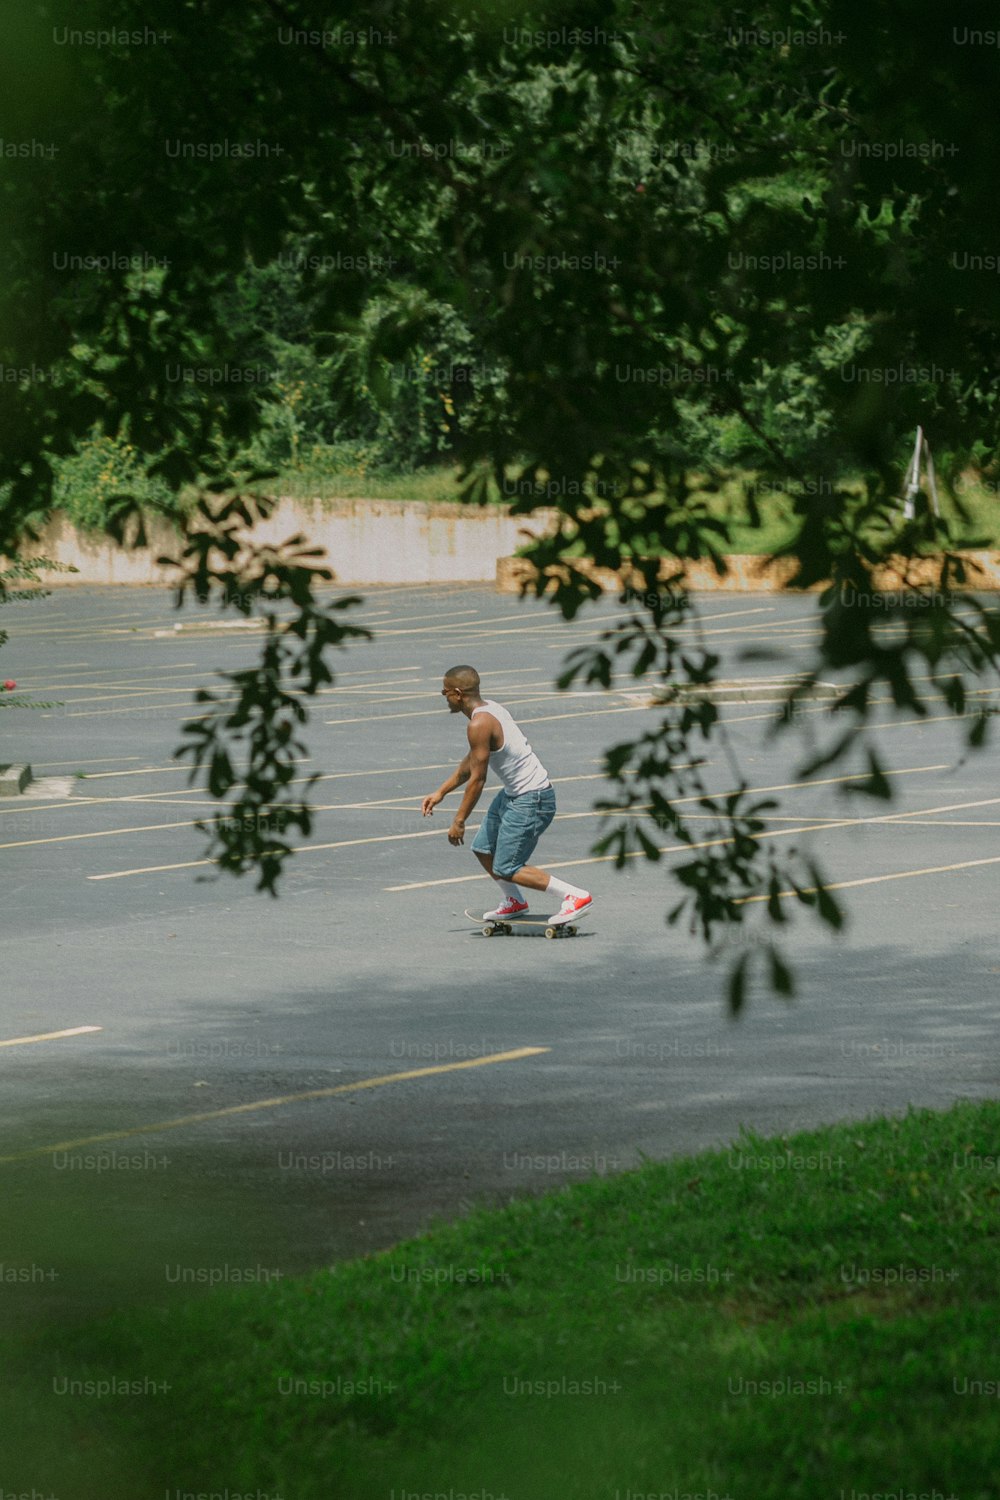 Un hombre montando una patineta en un estacionamiento